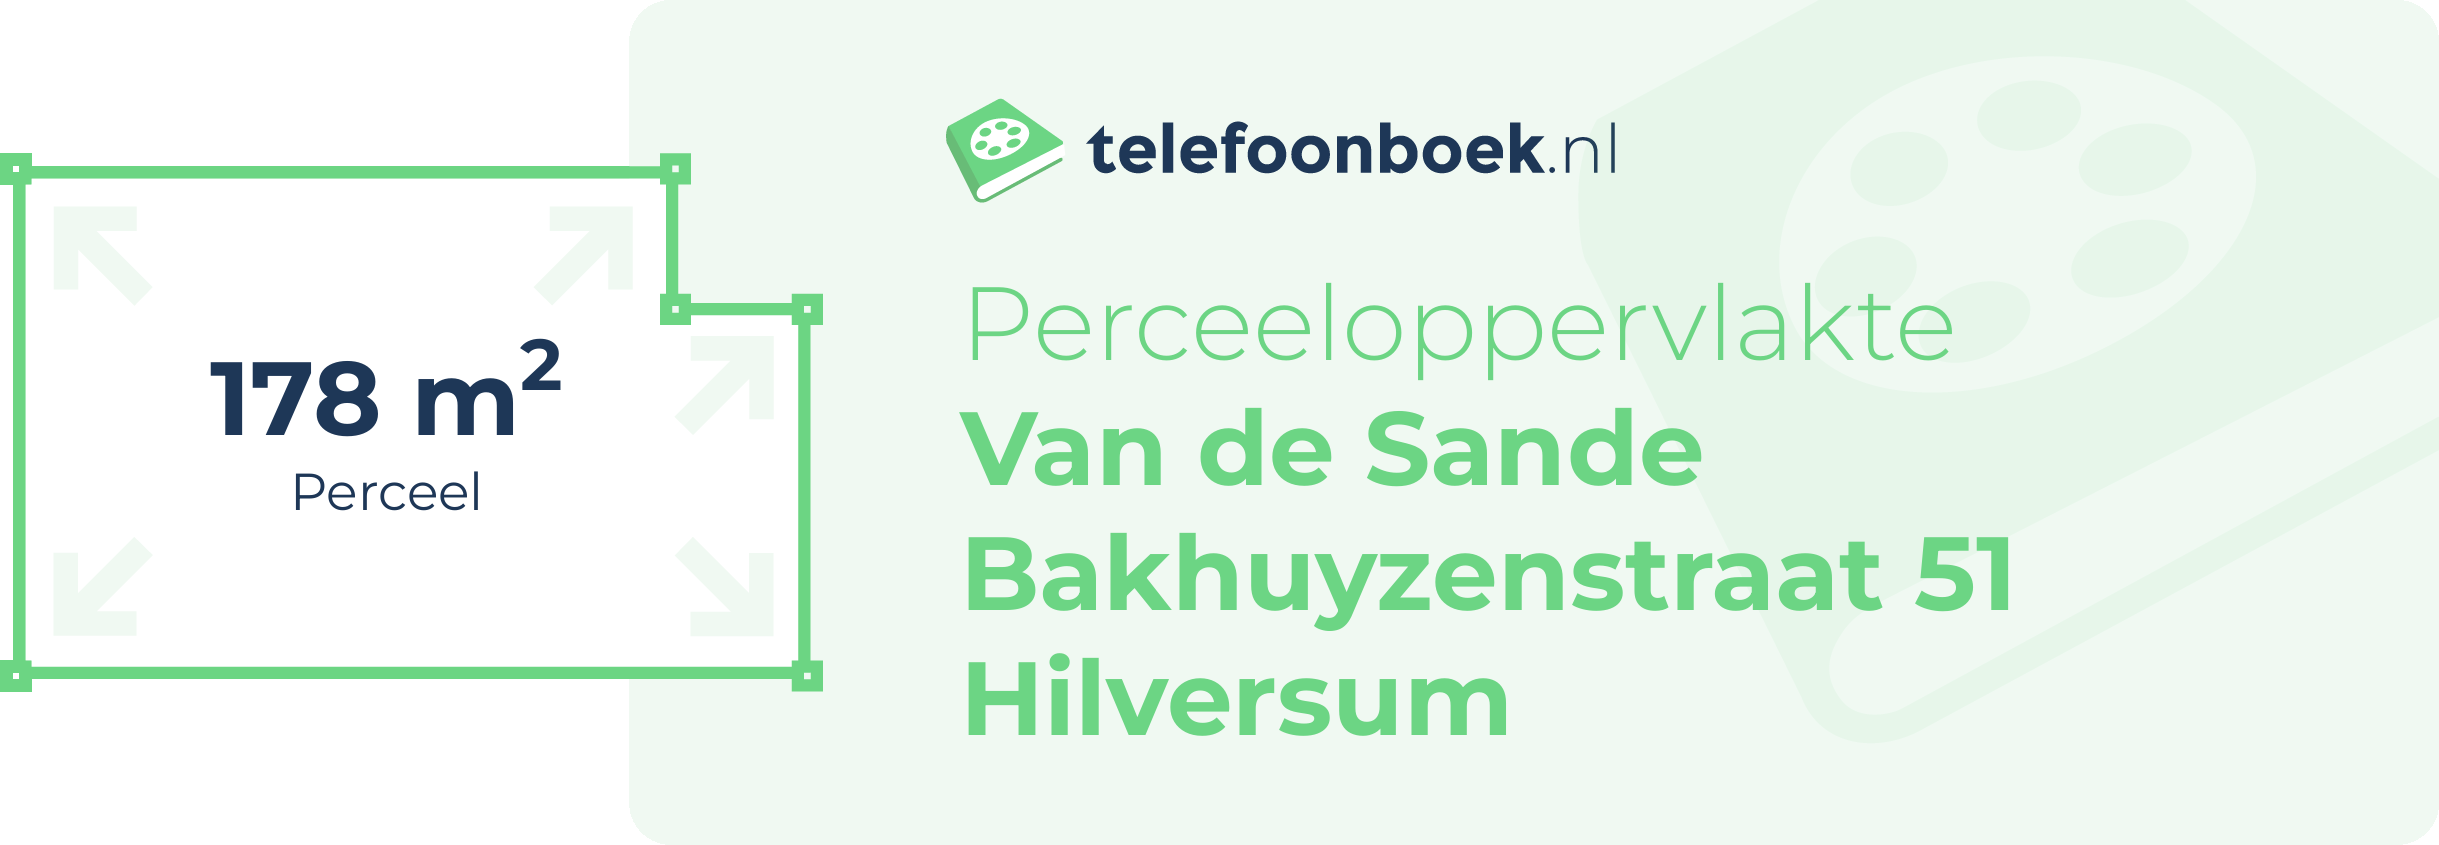 Perceeloppervlakte Van De Sande Bakhuyzenstraat 51 Hilversum